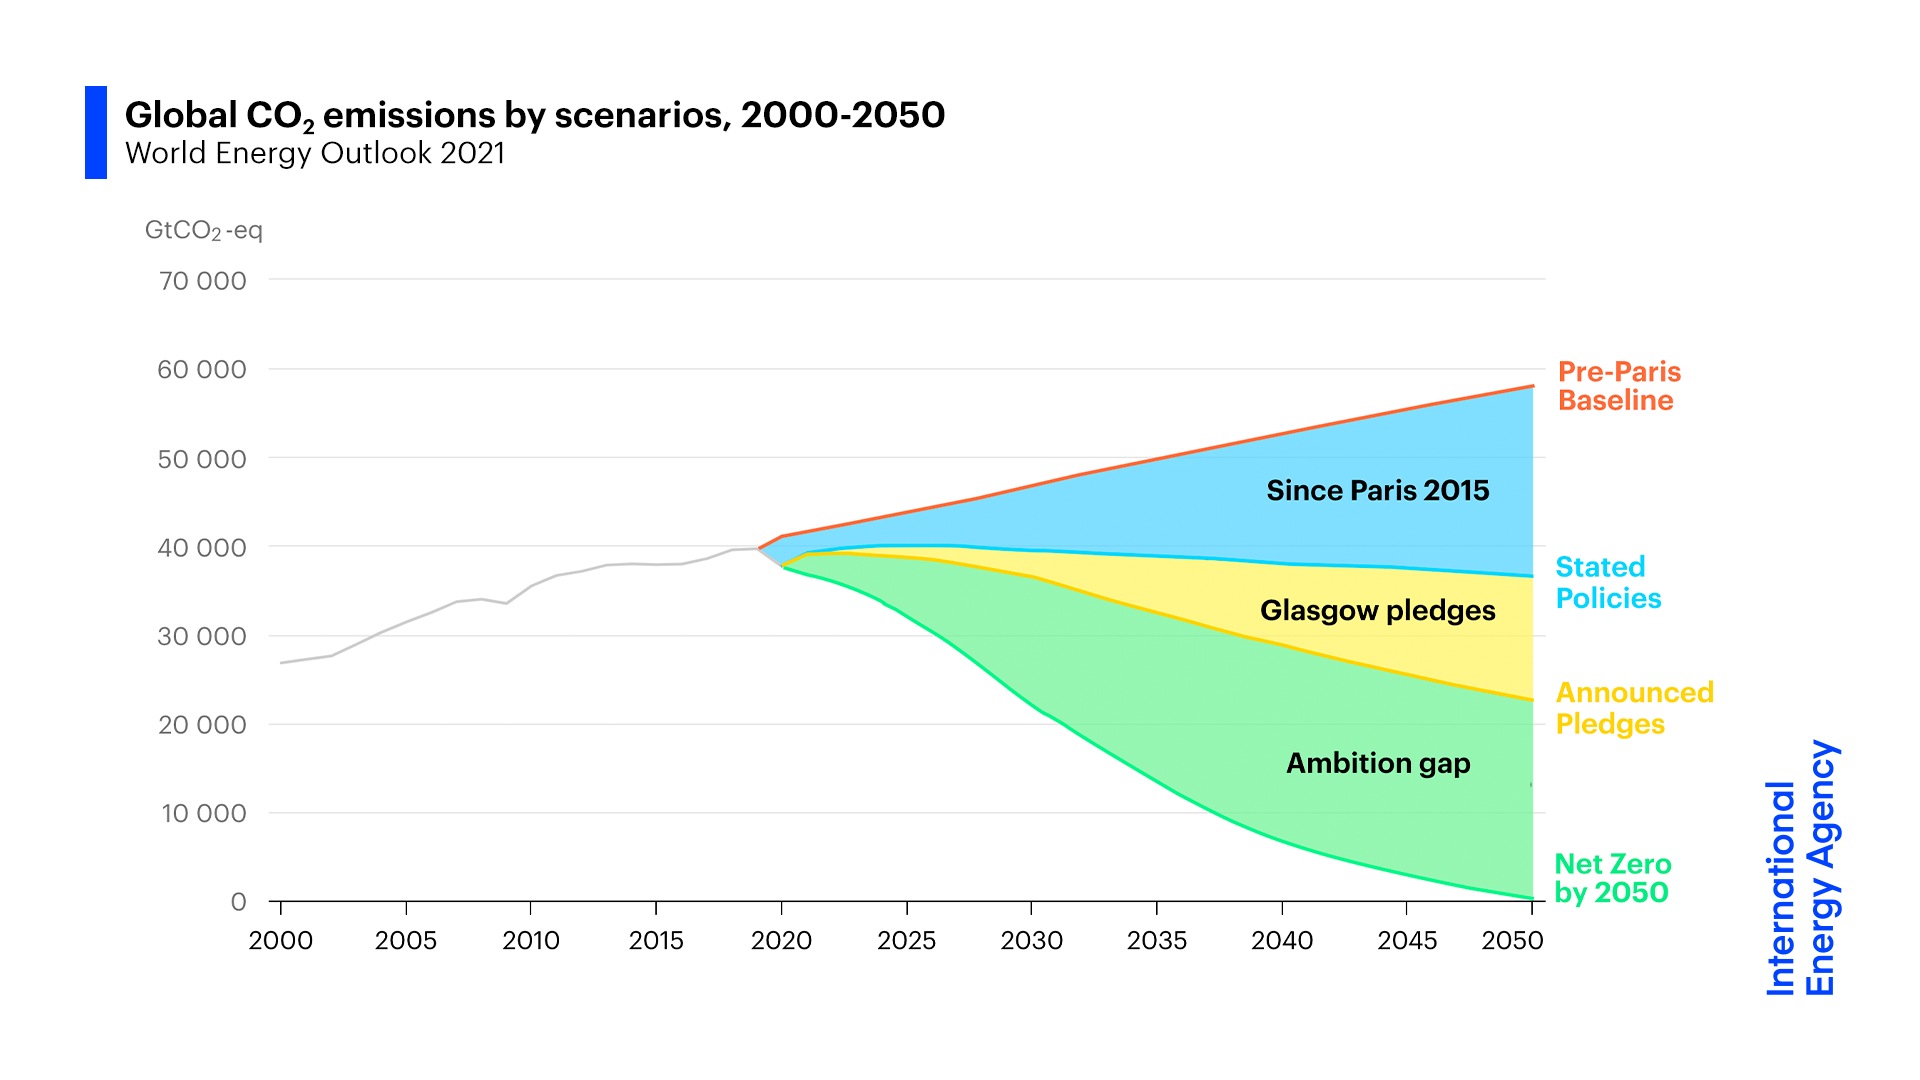 Die Welt am Scheideweg: Das grüne &quot;Ambition Gap&quot; in der Graphik illustriert, was noch fehlt zur Netto-Null bis 2050. (Quelle: IEA)